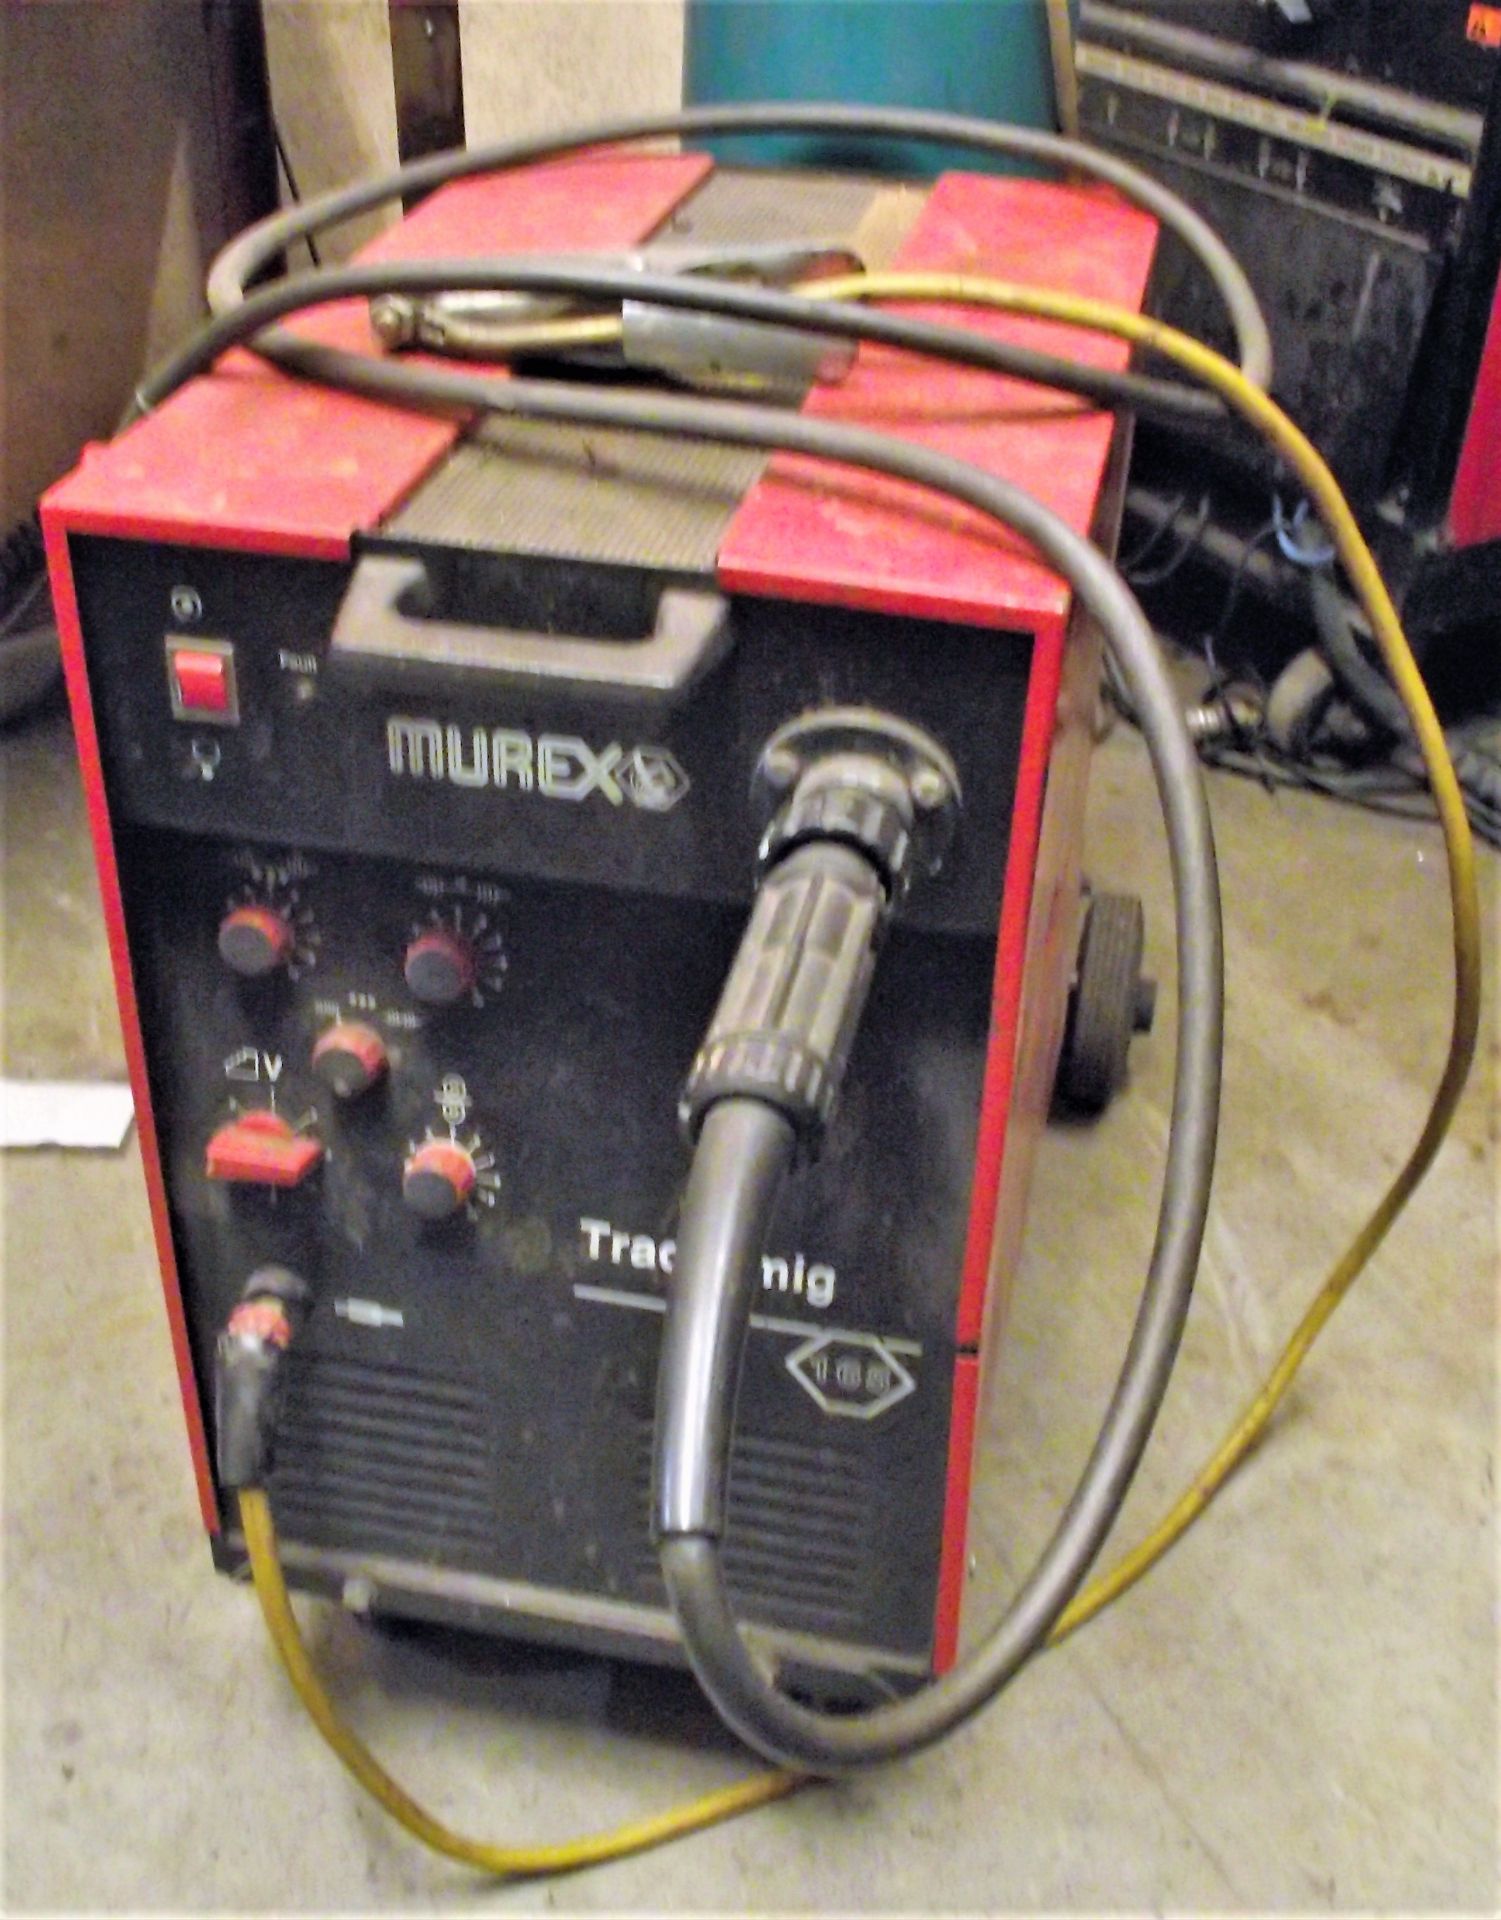 Murex Tradesmig 165 Welding Set